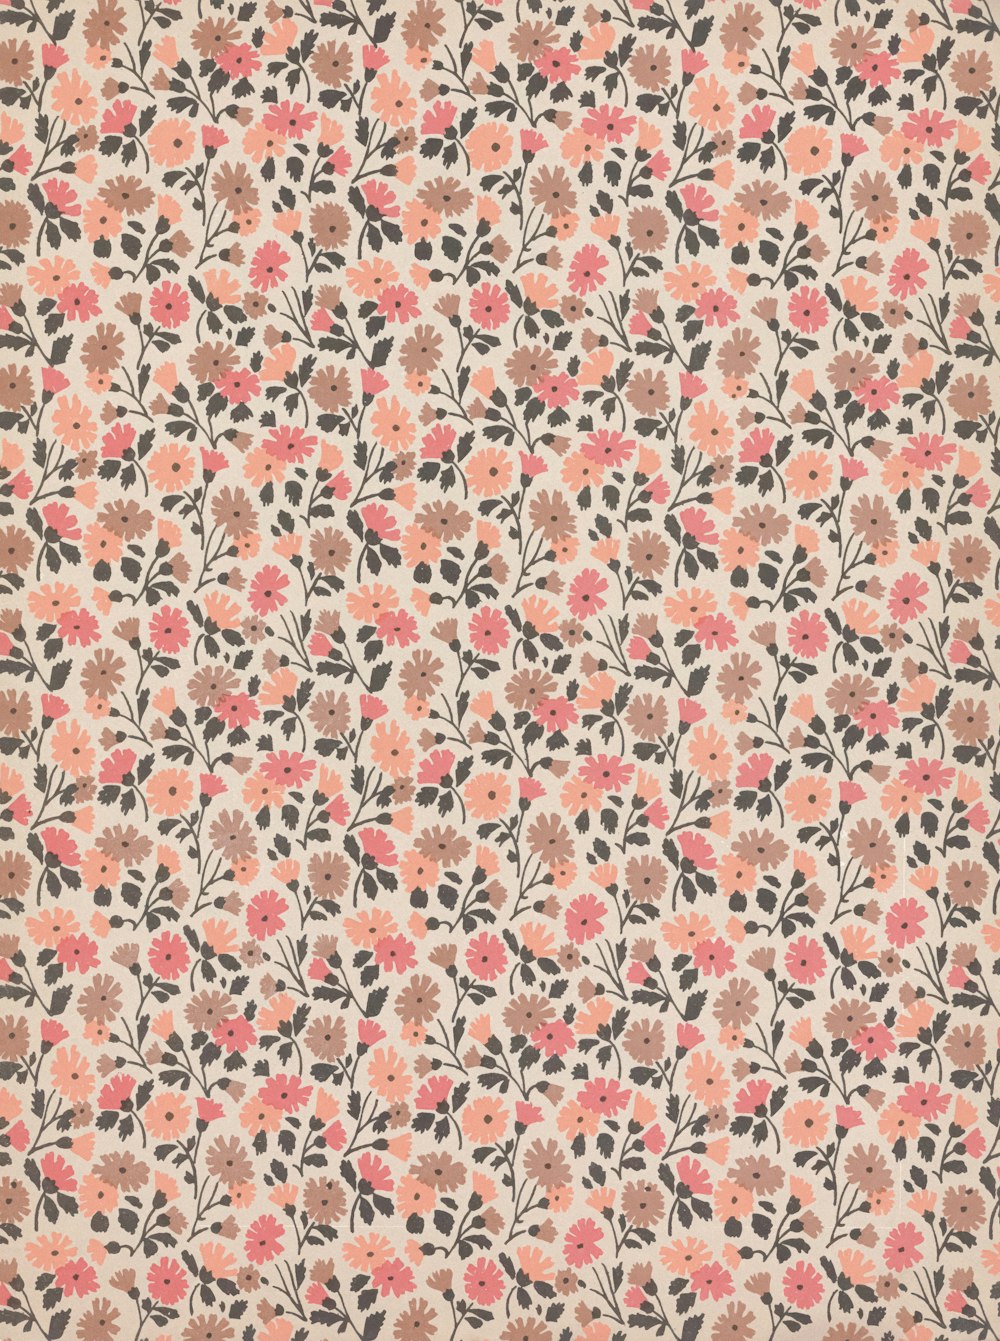 베이지색 배경에 분홍색 꽃이 있는 꽃무늬